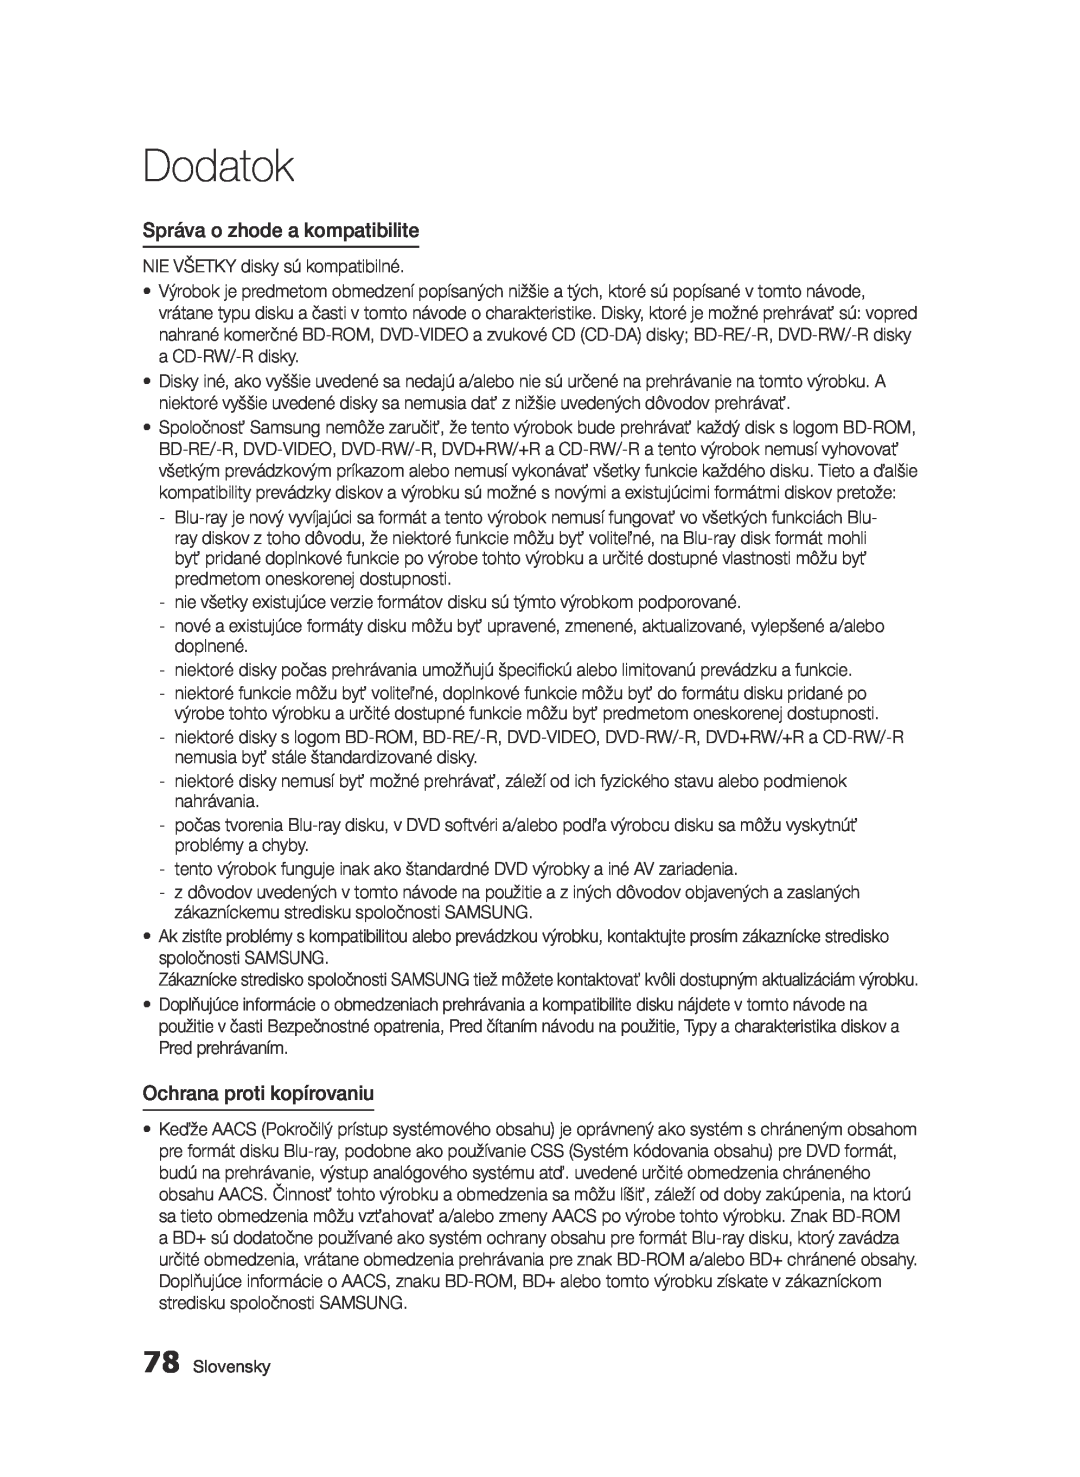 Samsung BD-E6300/EN manual Správa o zhode a kompatibilite, Ochrana proti kopírovaniu, Dodatok 